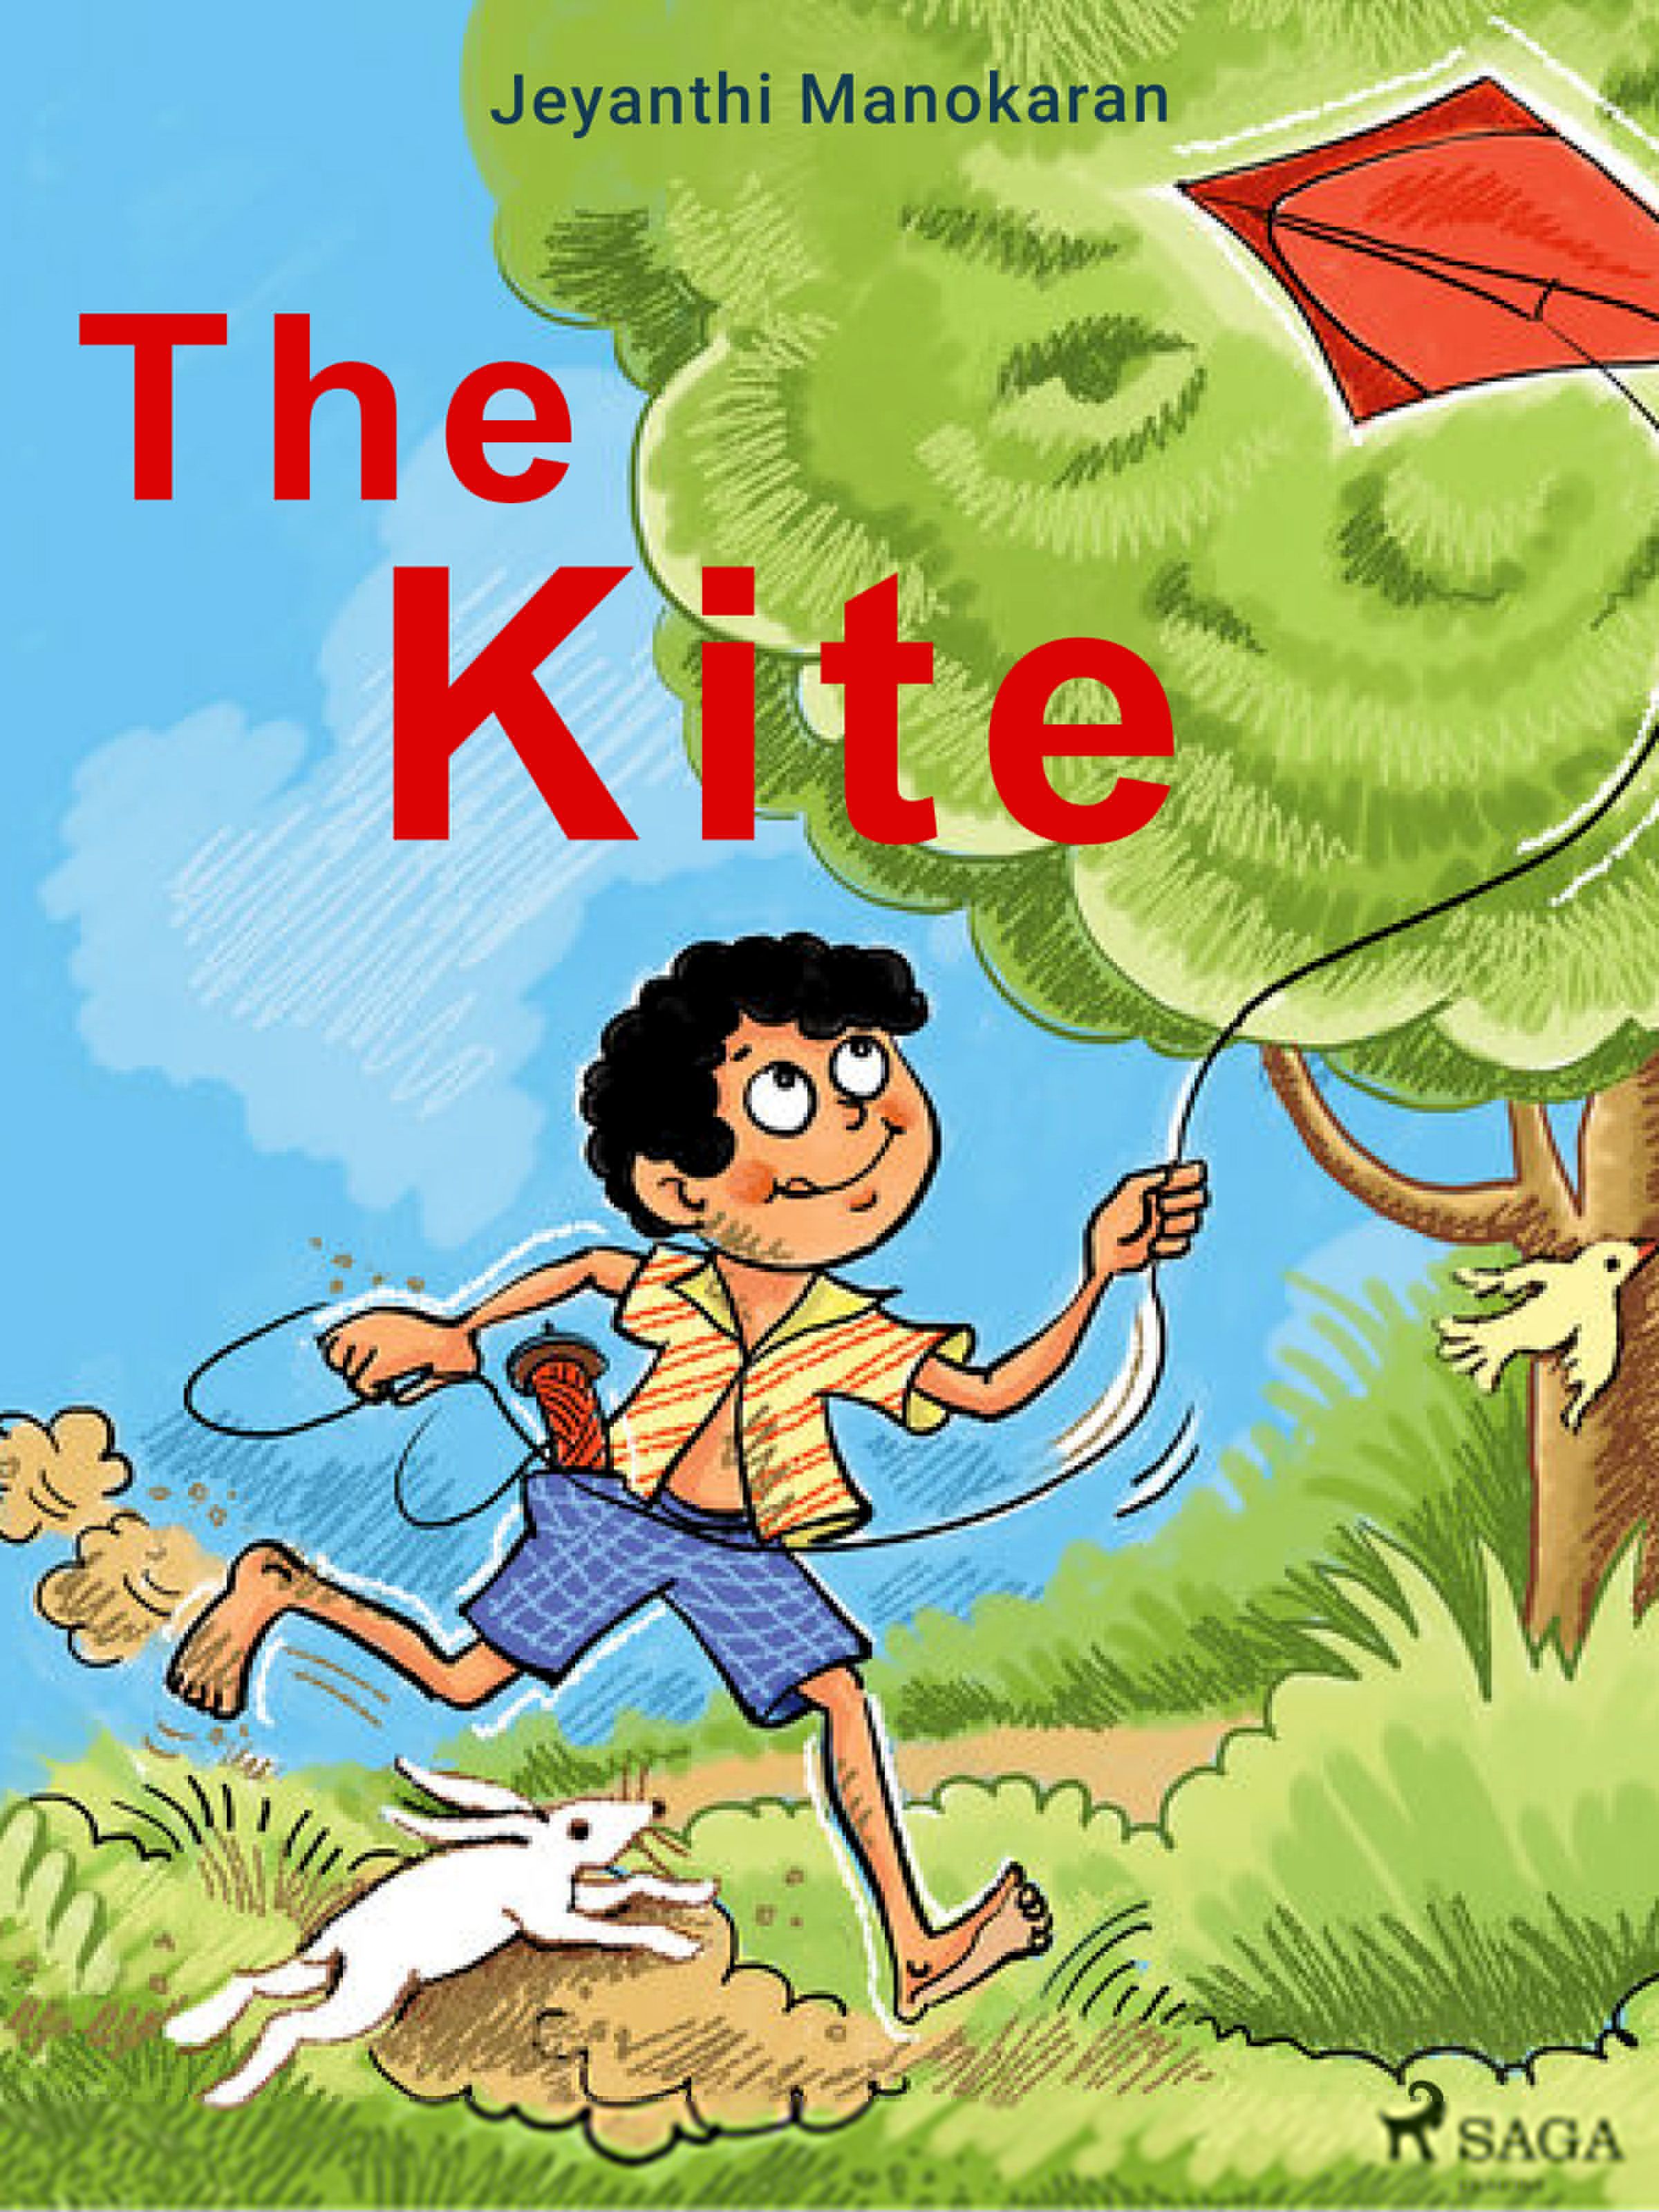 The Kite, eBook by Jeyanthi Manokaran